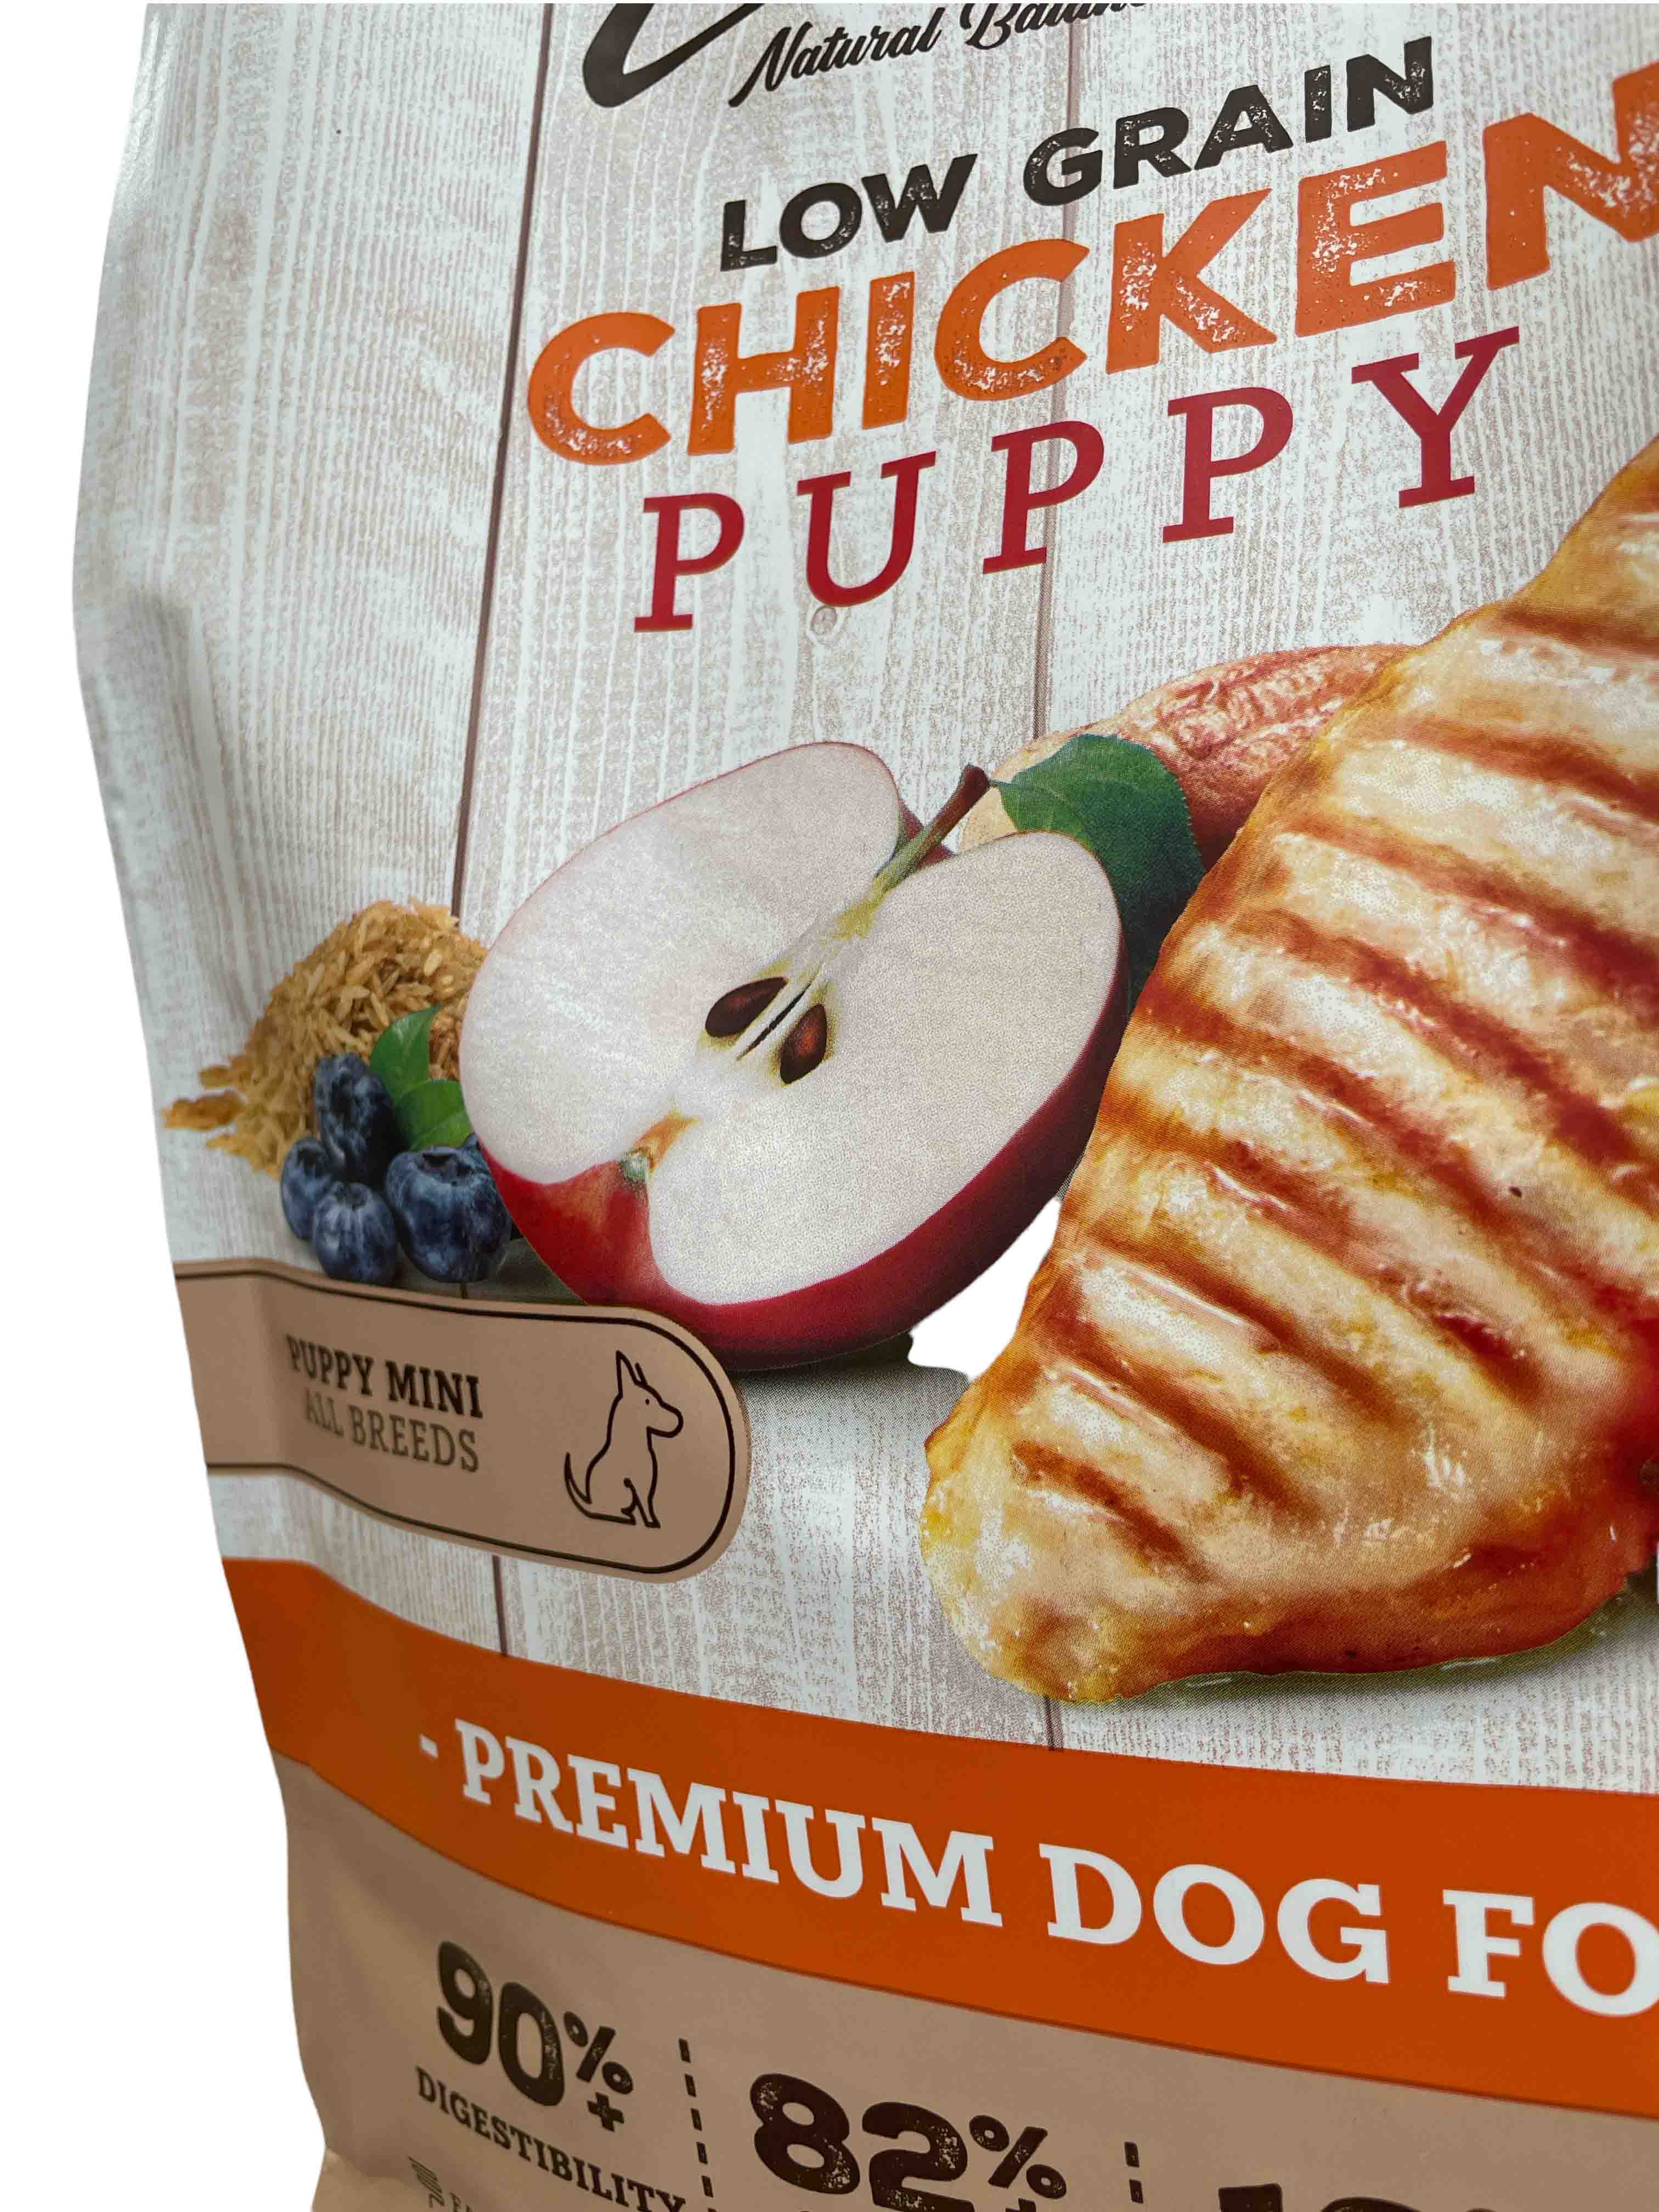 Zen Low Grain Free Puppy mini , Alimento completo, sano y saludable para perros cachorros de raza pequeña